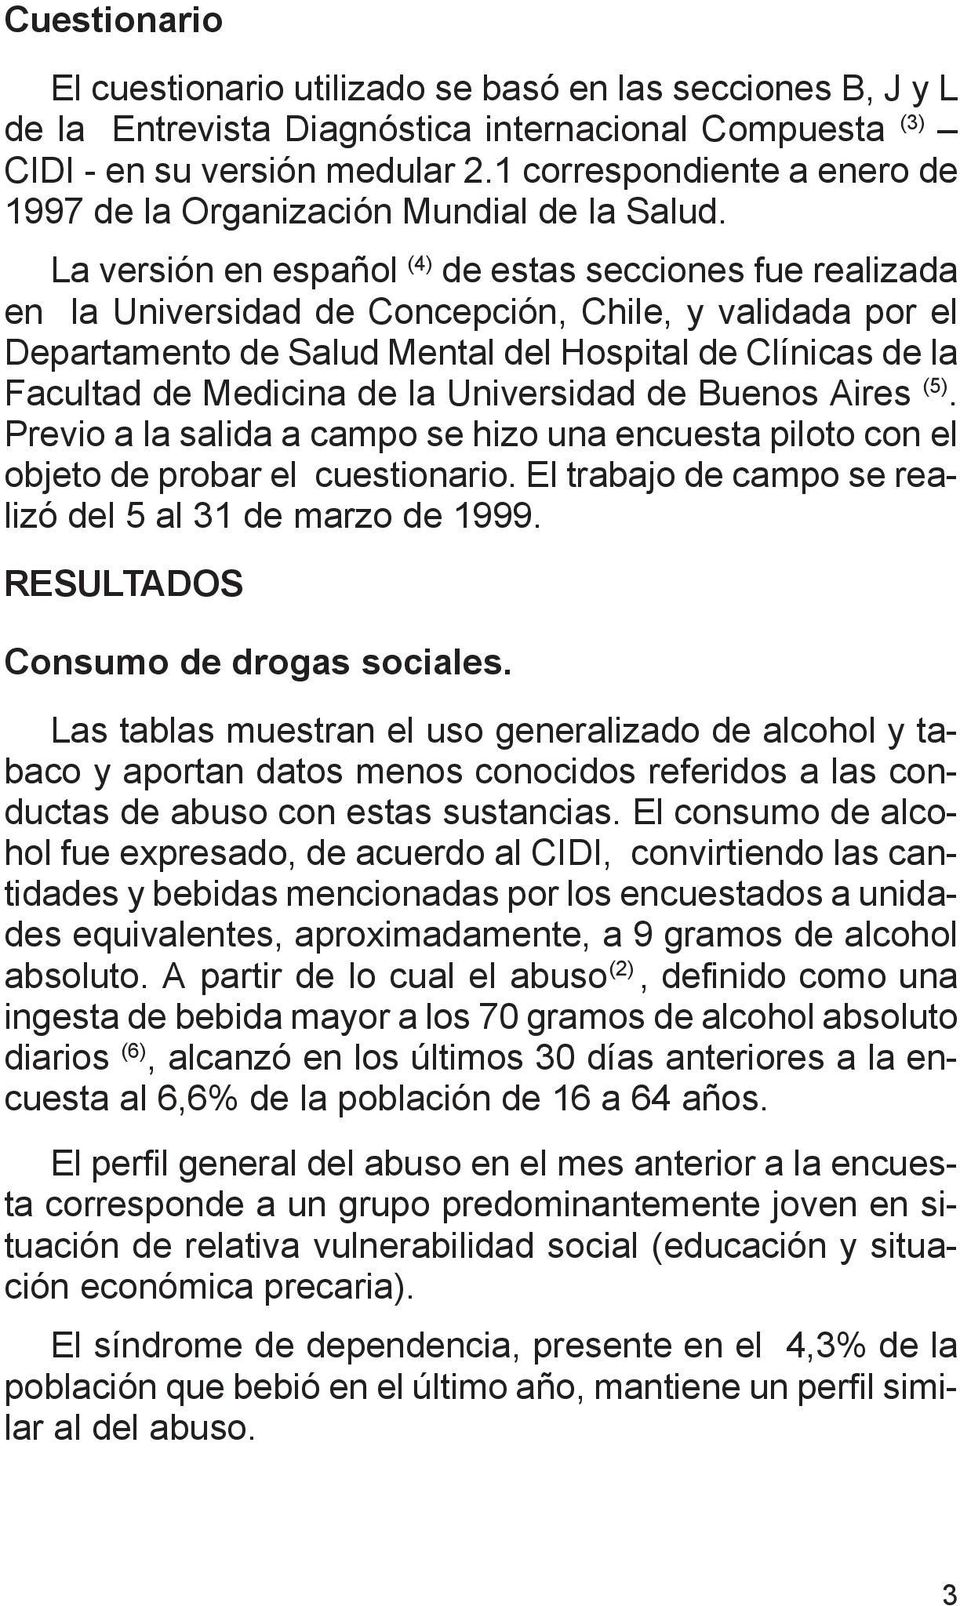 La versión en español (4) de estas secciones fue realizada en la Universidad de Concepción, Chile, y validada por el Departamento de Salud Mental del Hospital de Clínicas de la Facultad de Medicina